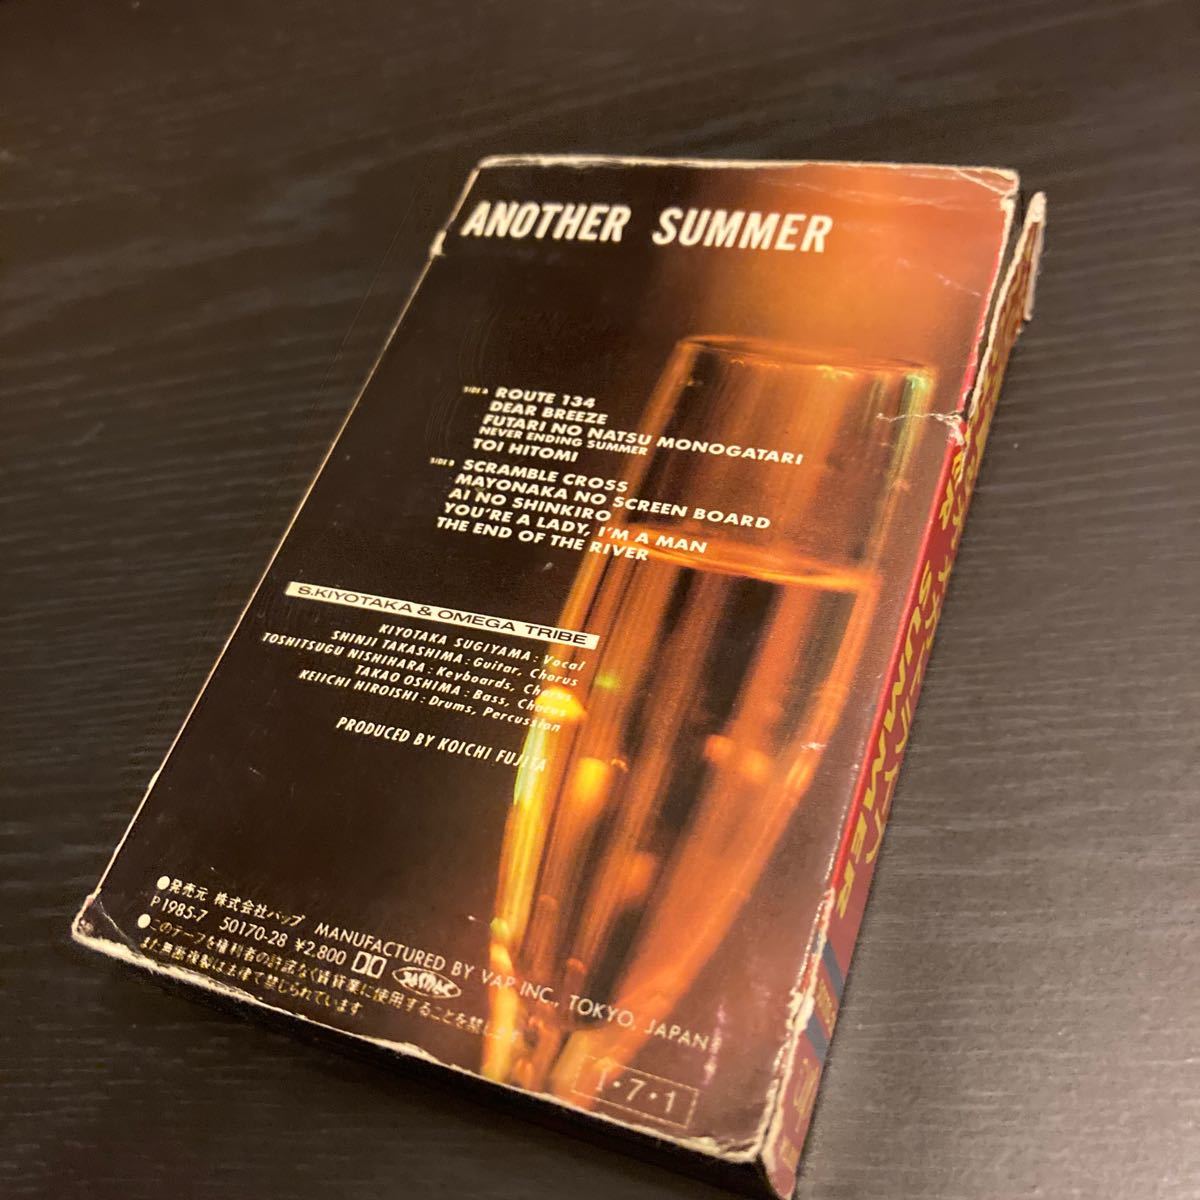 S. Kiyotaka & Omega Tribe 【Another Summer】カセットテープ cassette tape Vap 50170-28 1985 杉山 清貴 オメガトライブ_画像4